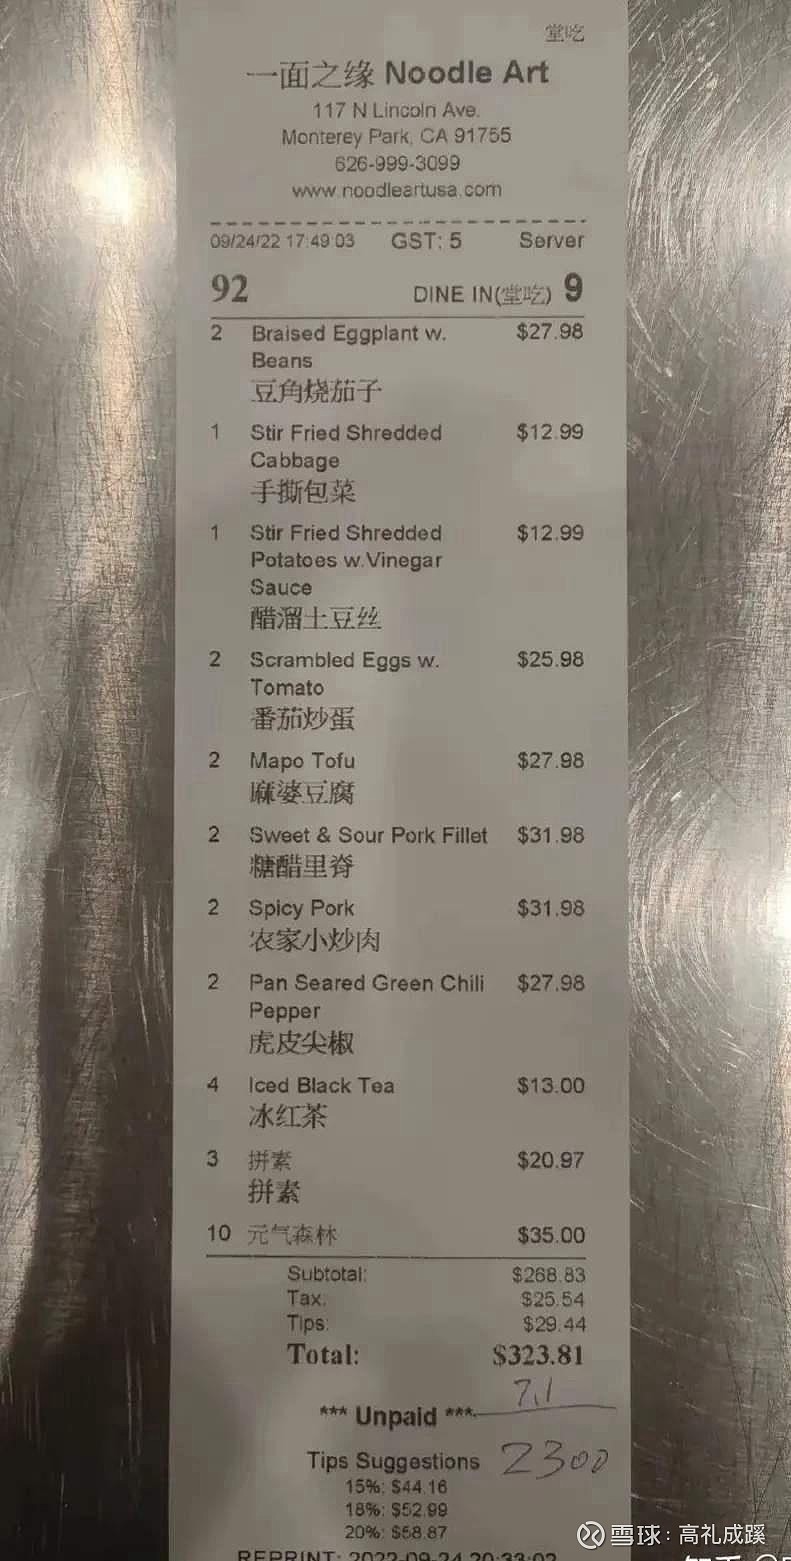 美国中餐物价，可能展示美元与人